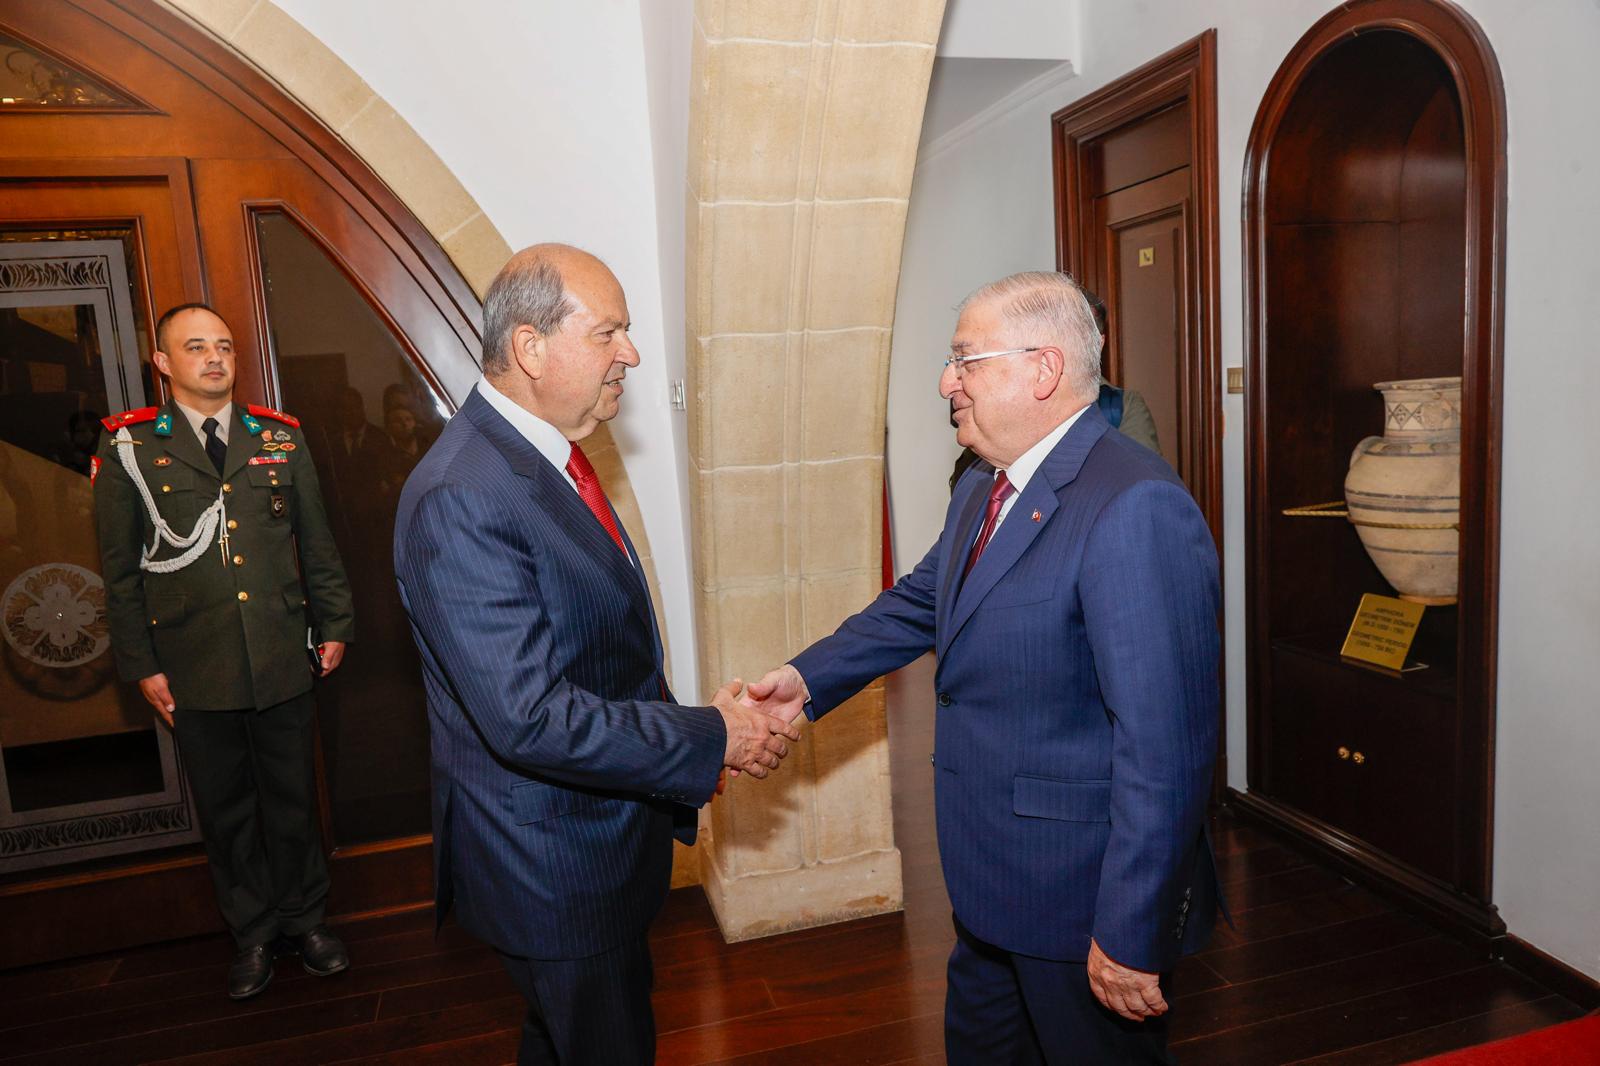 Cumhurbaşkanı Tatar, Türkiye Savunma Bakanı Güler’i kabul etti